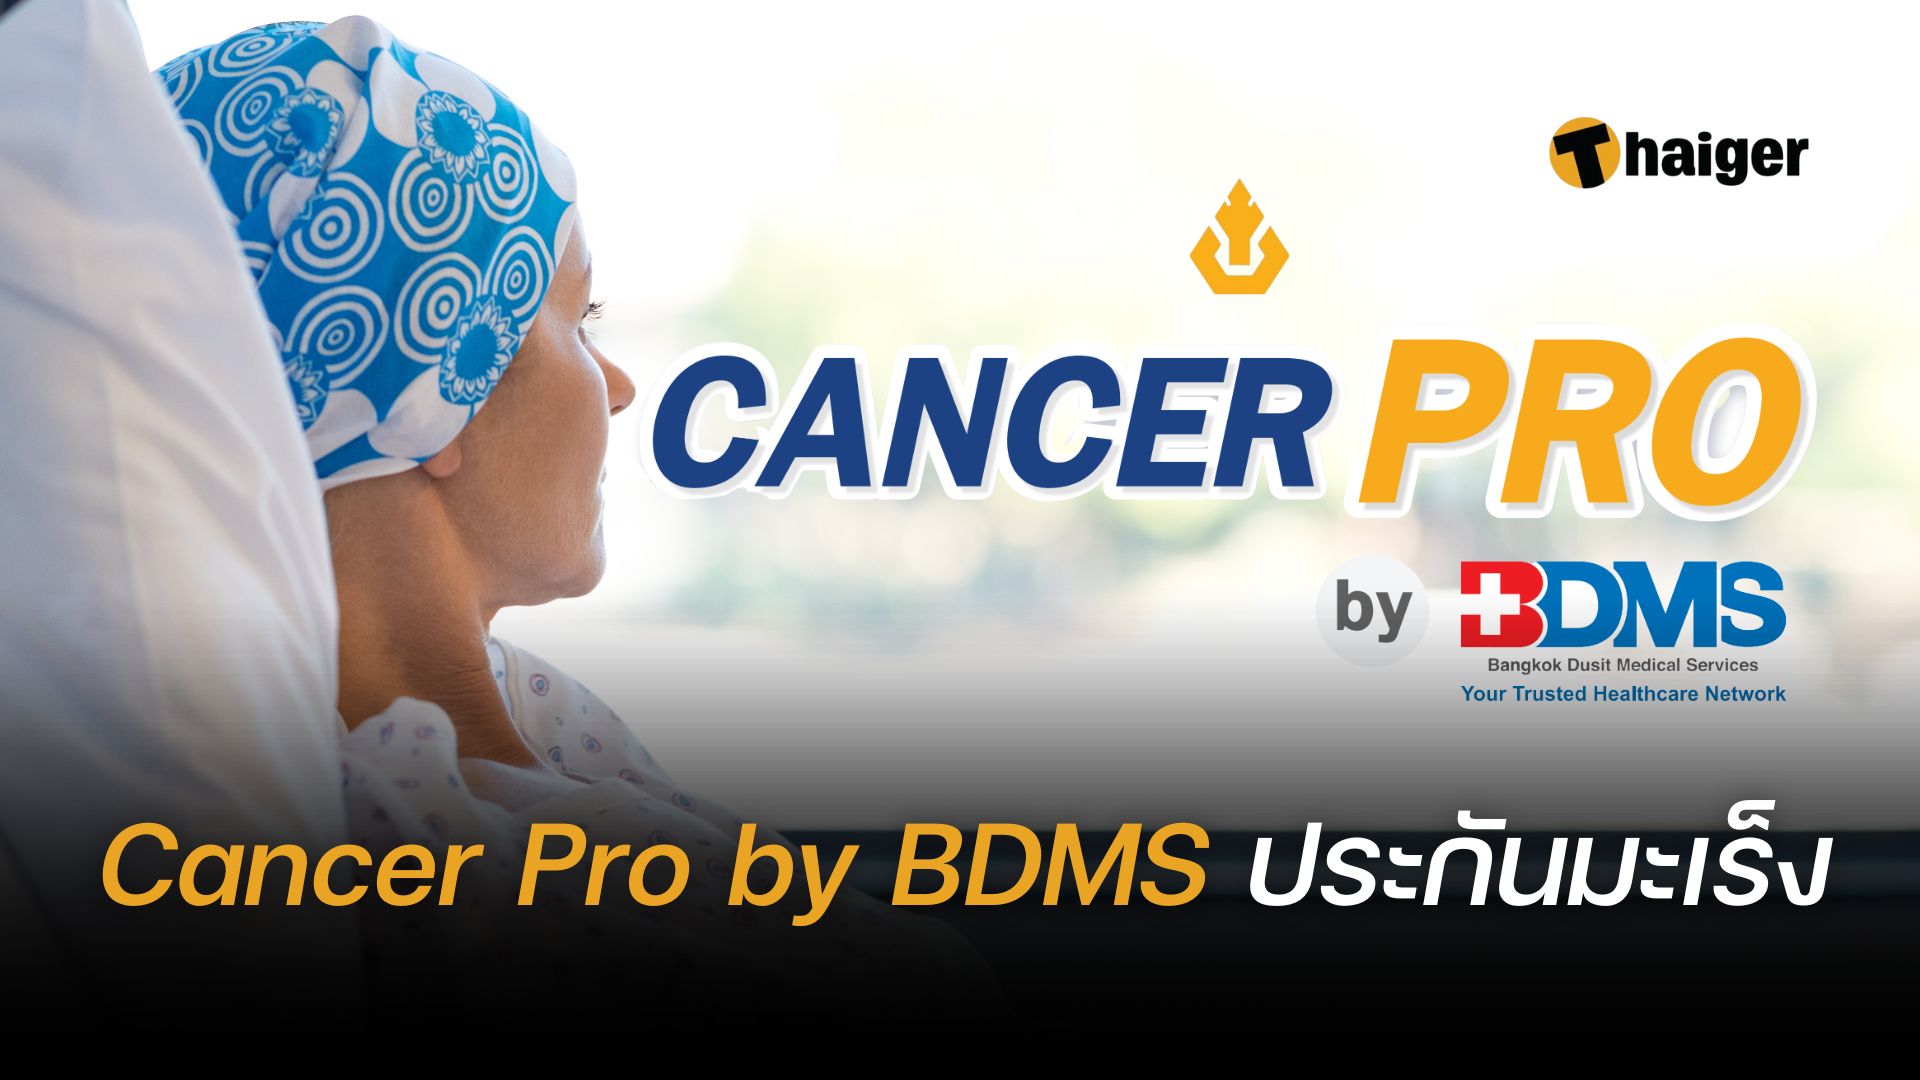 ประกันภัยโรคมะเร็ง Cancer Pro by BDMS